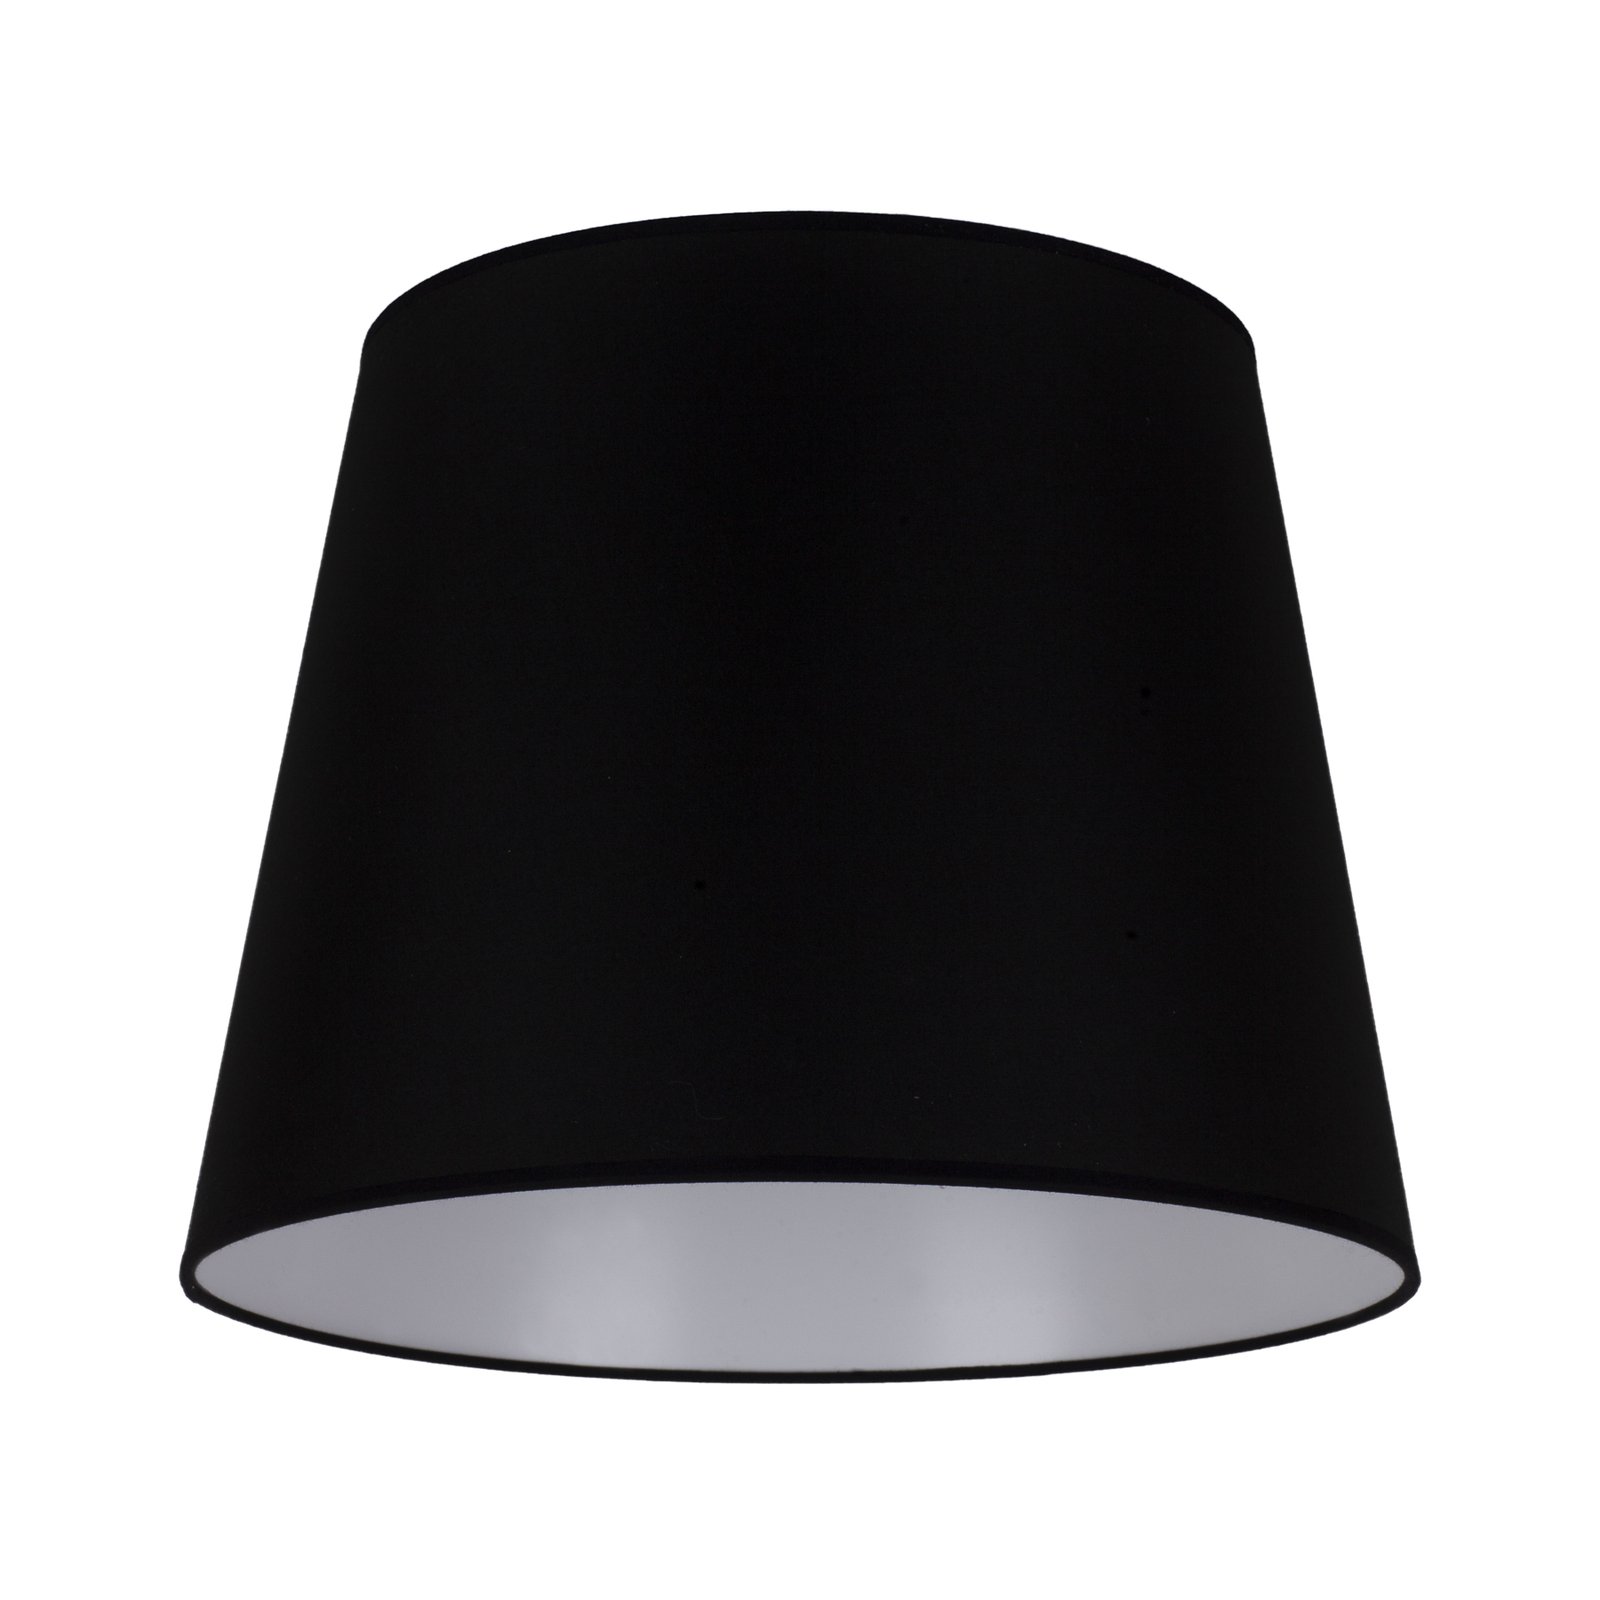 Lampeskjerm Classic L til gulvlamper, svart